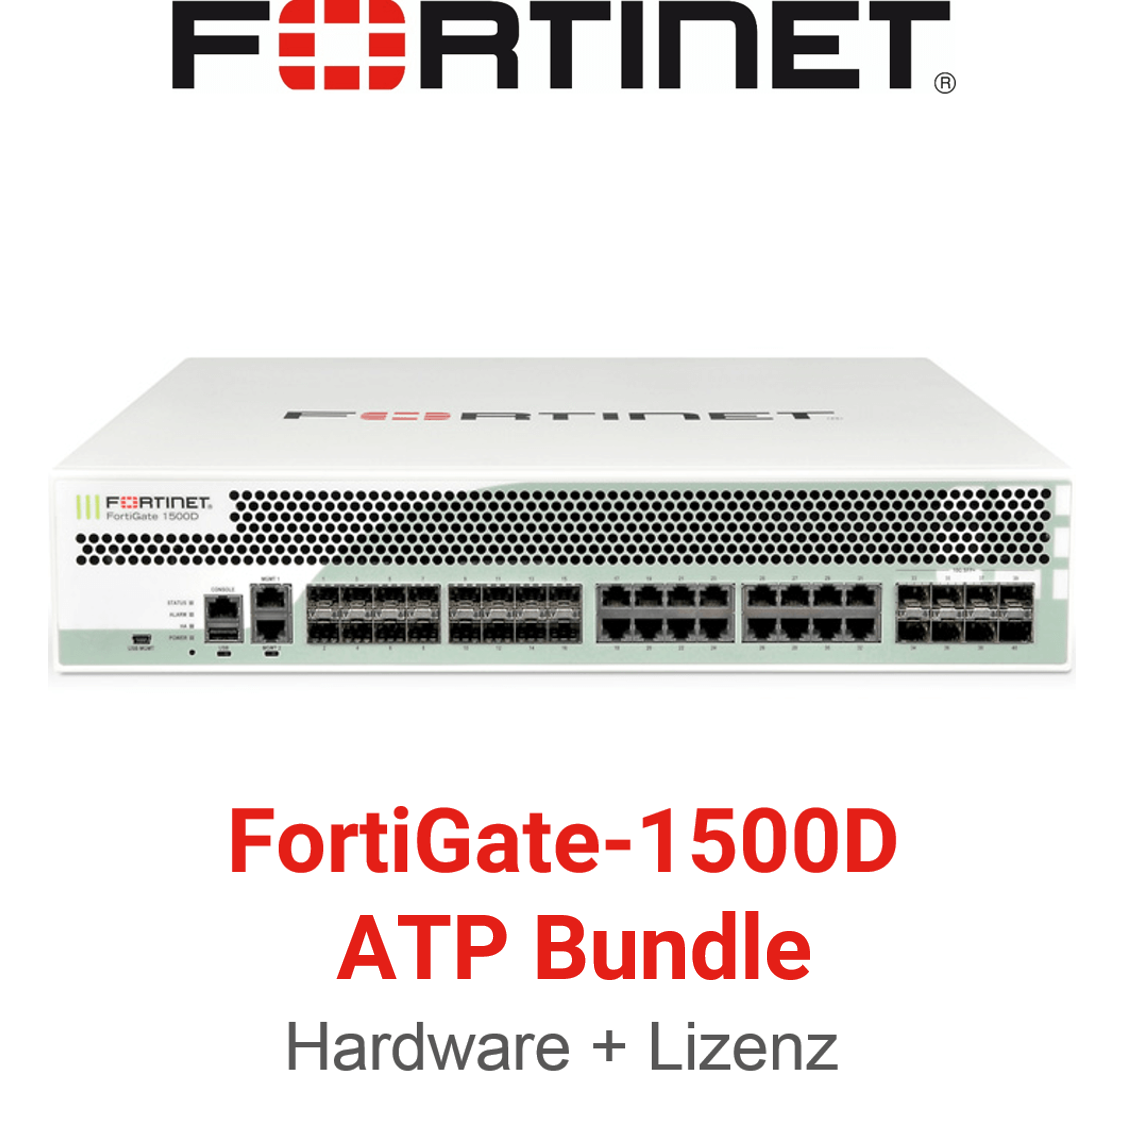 Fortinet FortiGate-1500D - ATP Bundle (End of Sale/Life)